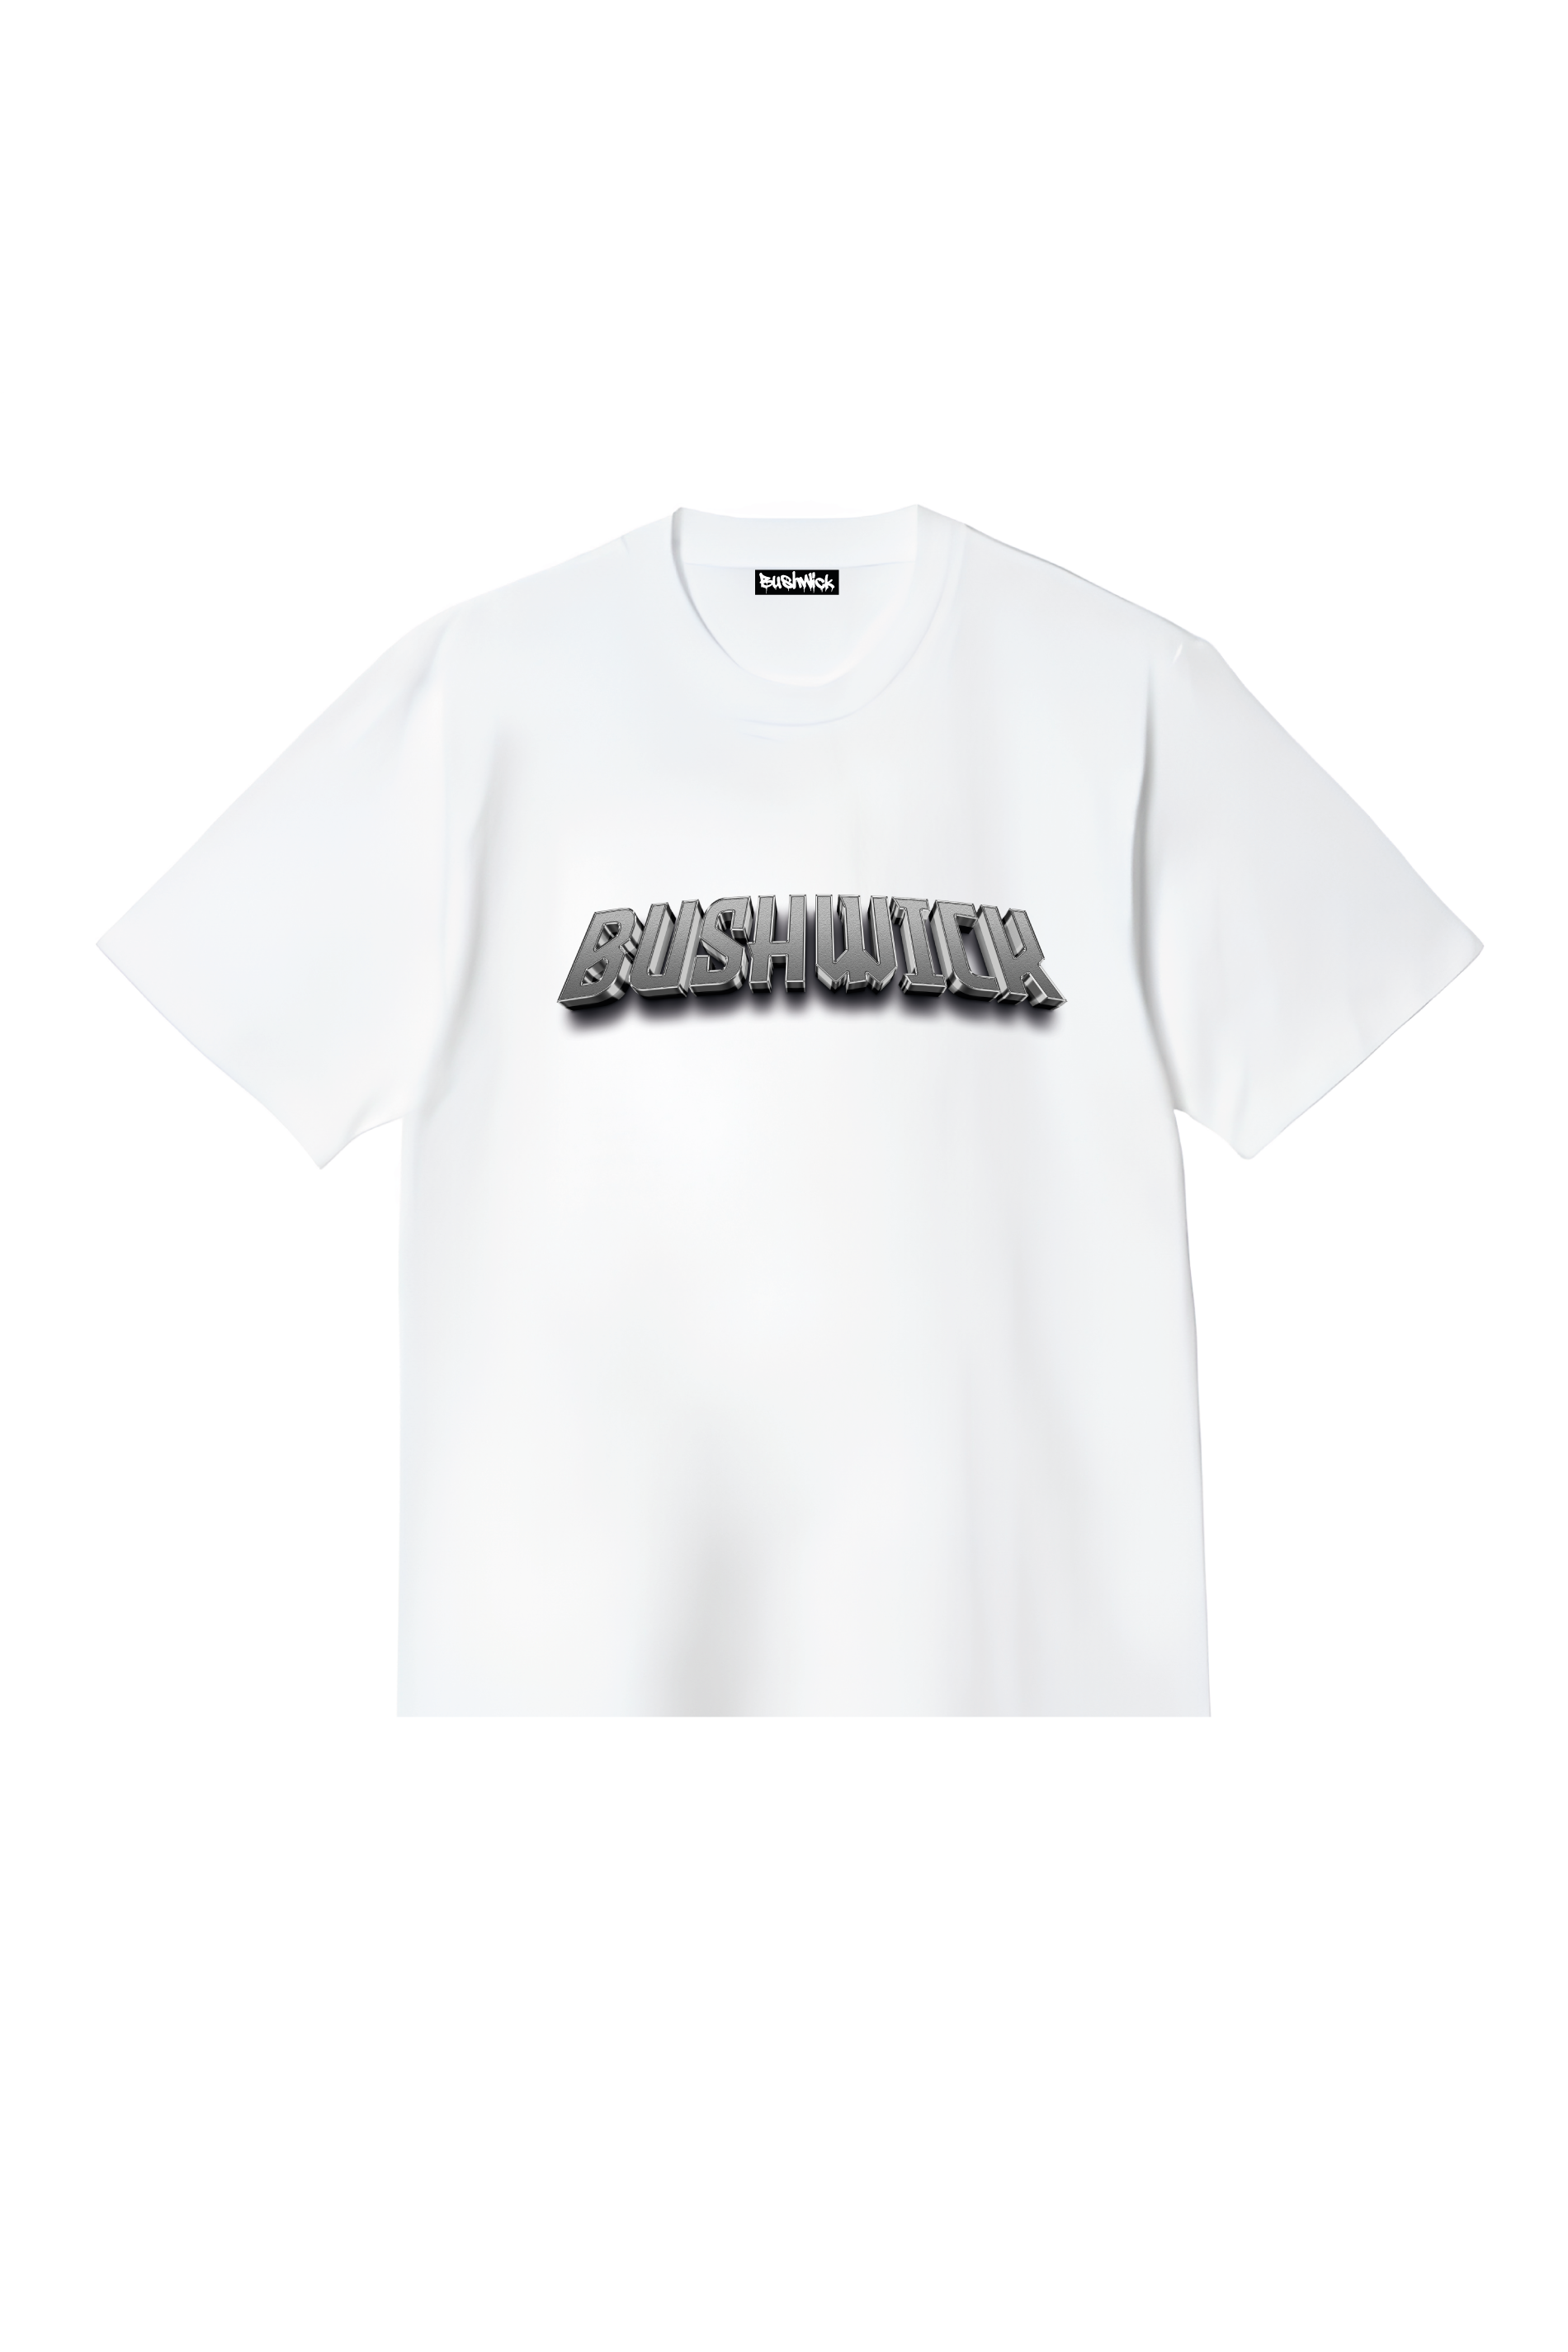 Bushwick T-Shirt uomo Iron